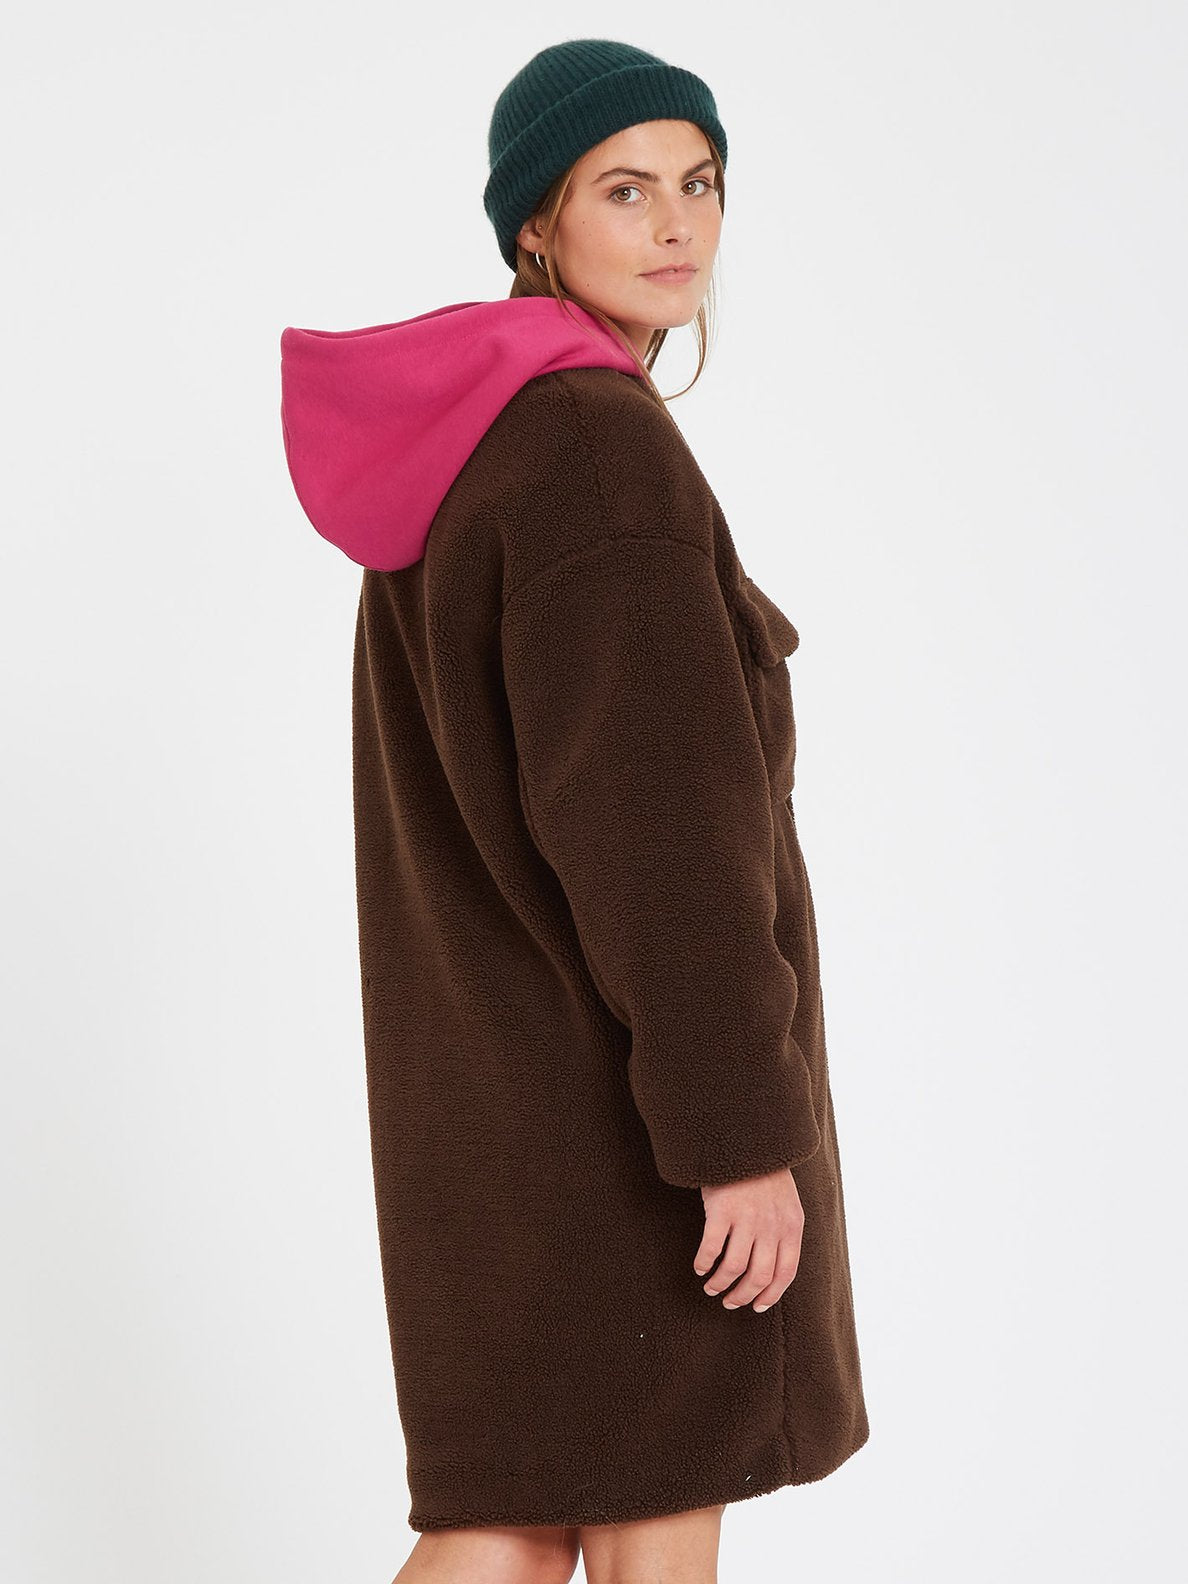 Eesypeesy Coat   Dark Brown – Volcom Japan